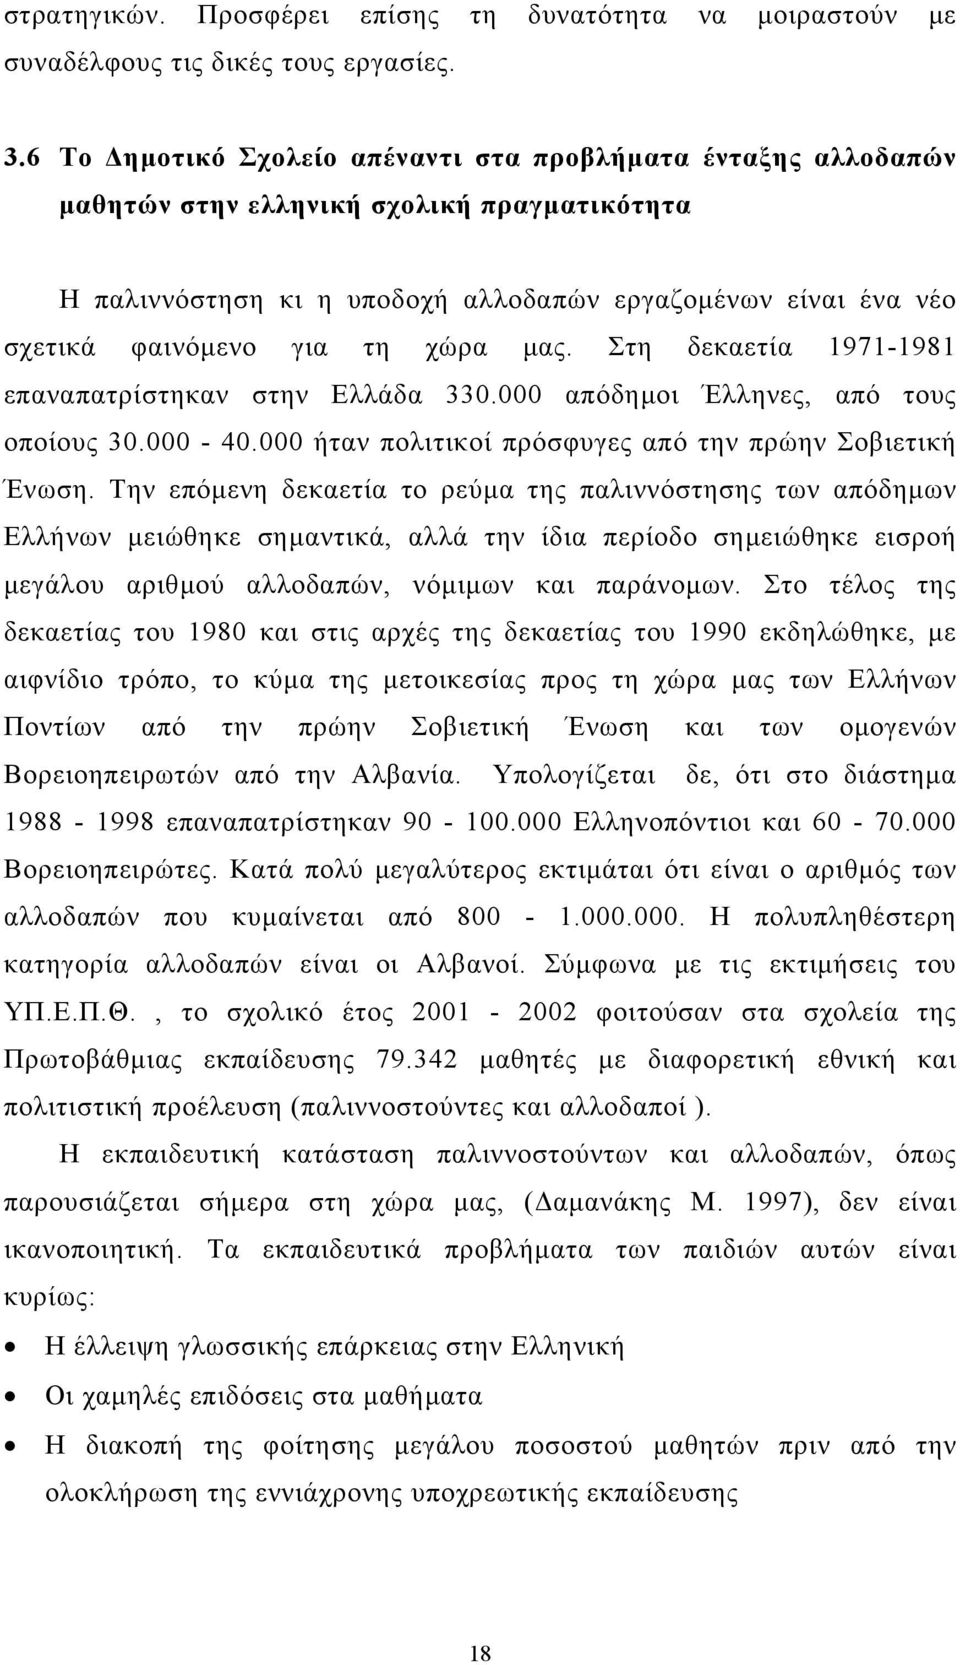 χώρα µας. Στη δεκαετία 1971-1981 επαναπατρίστηκαν στην Ελλάδα 330.000 απόδηµοι Έλληνες, από τους οποίους 30.000-40.000 ήταν πολιτικοί πρόσφυγες από την πρώην Σοβιετική Ένωση.